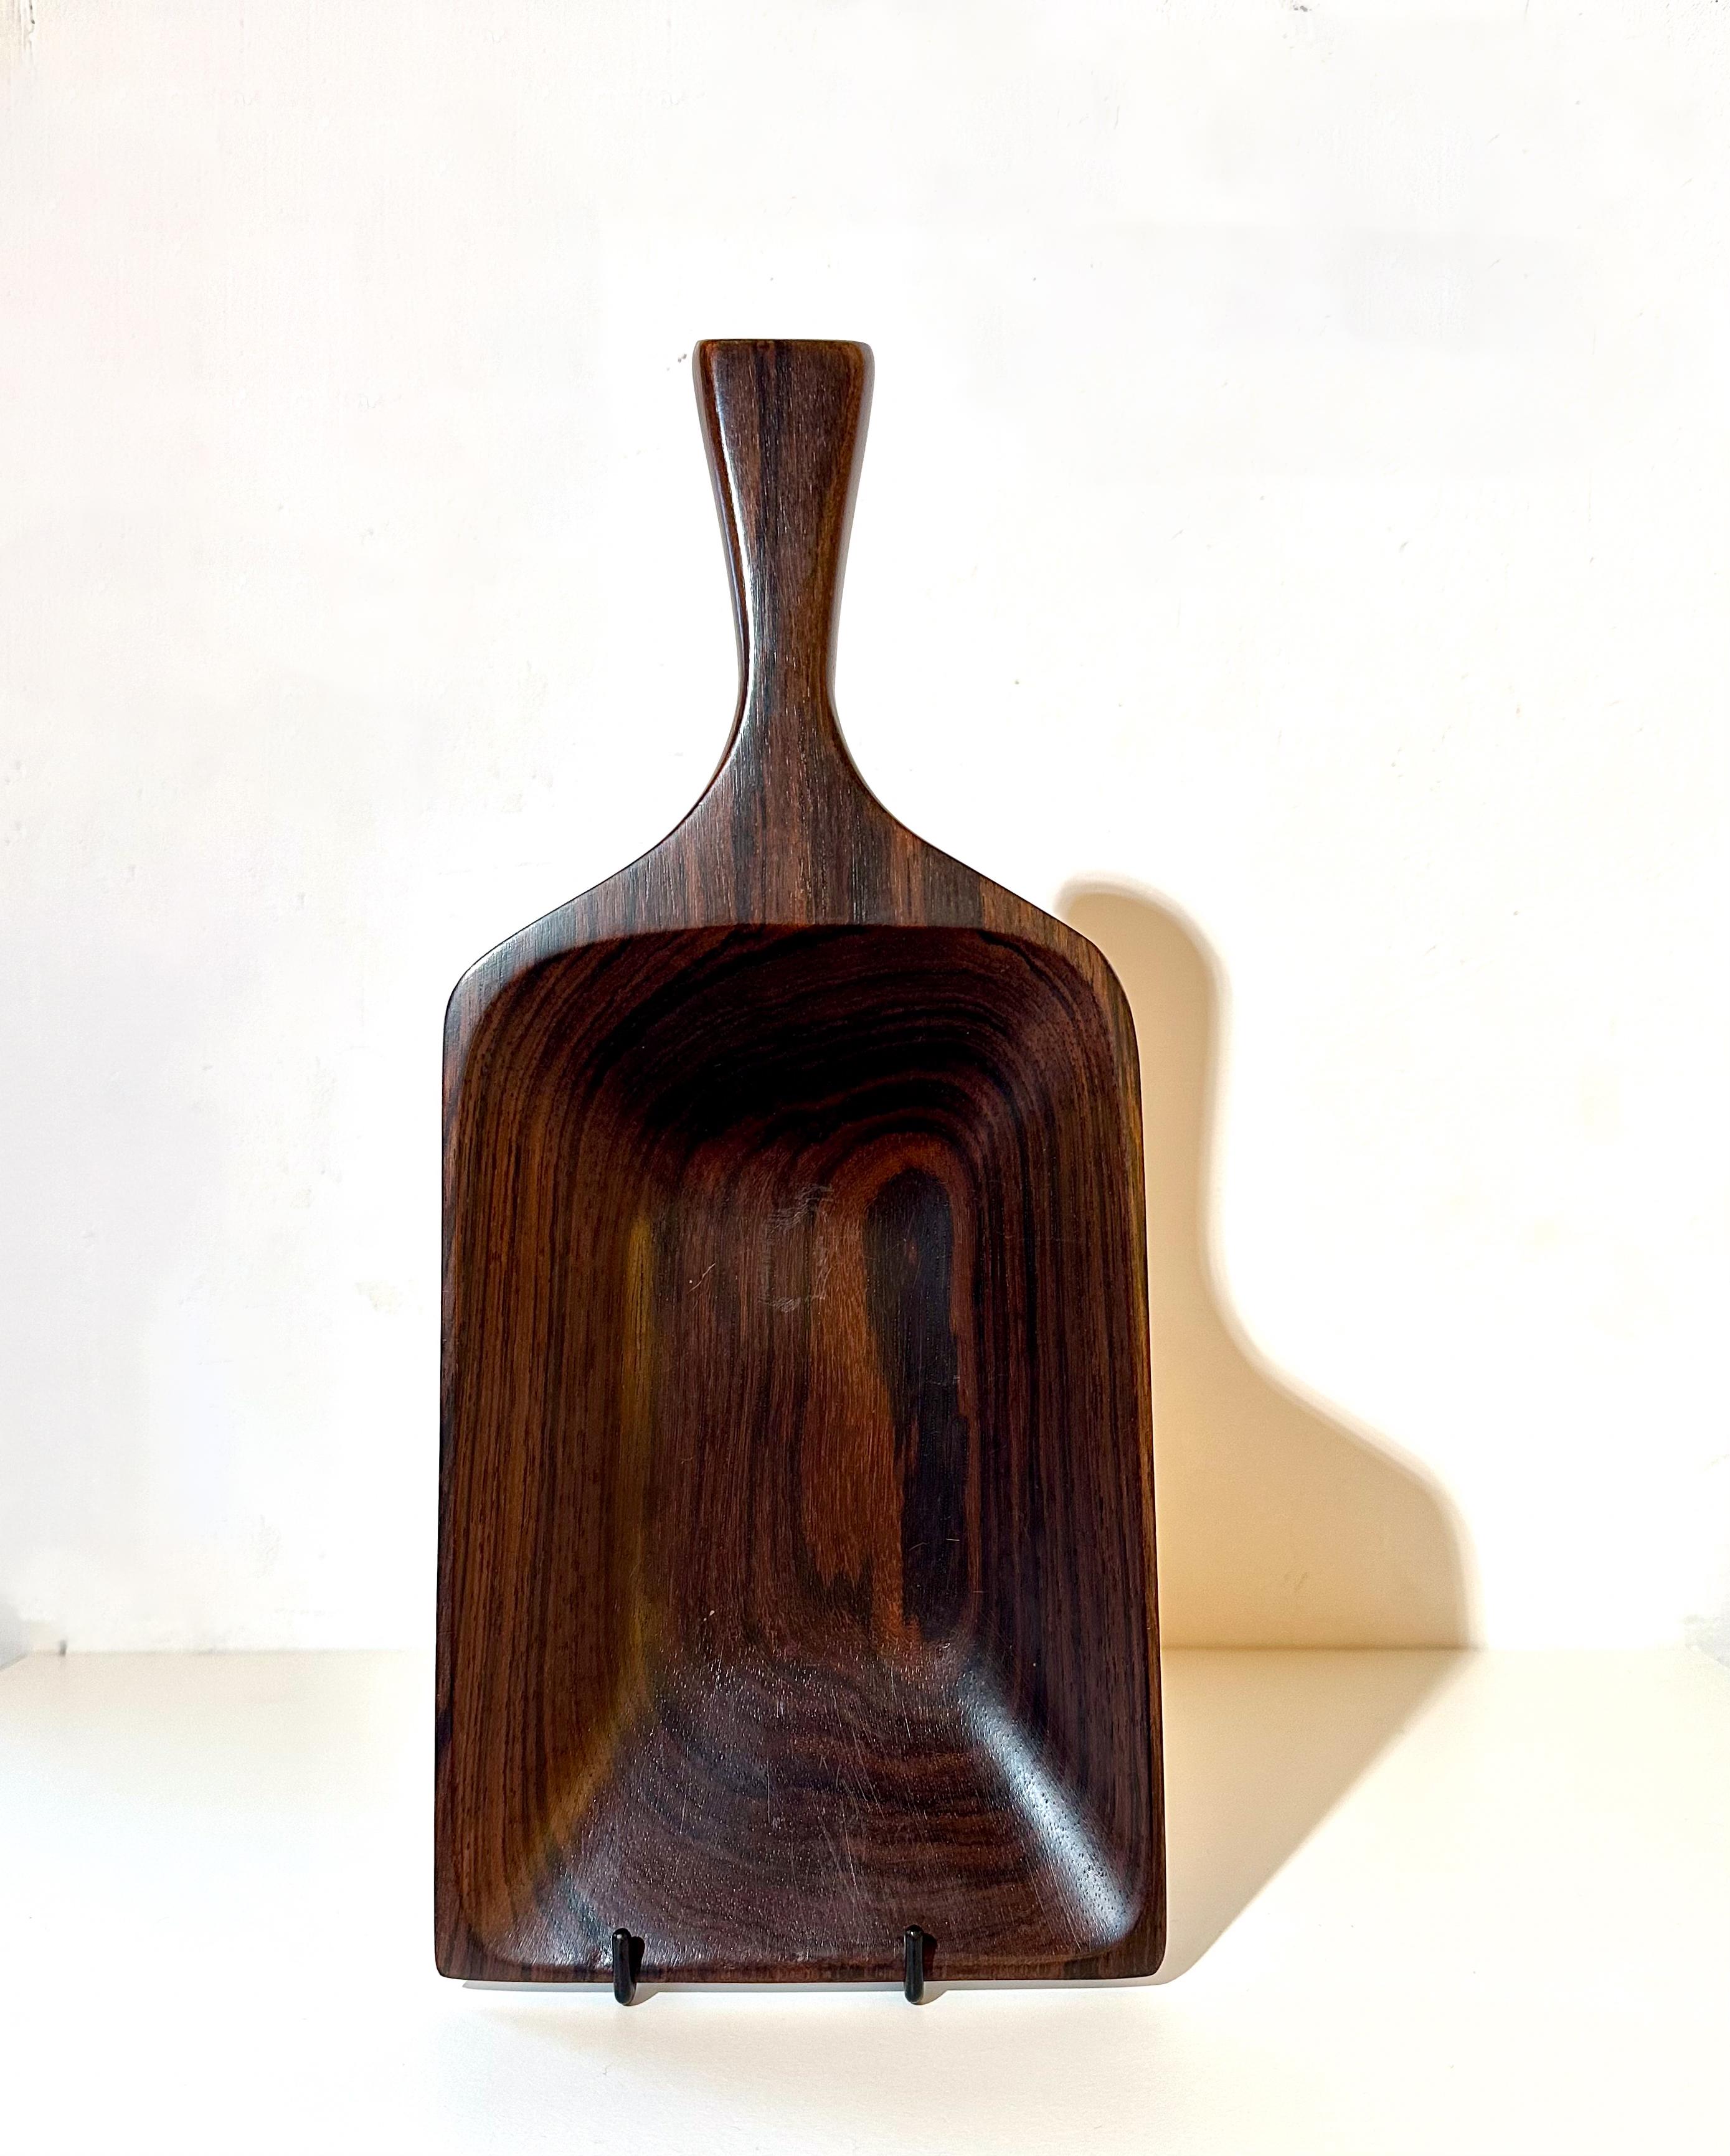 Jean Gillon
Modèle 109. vers 1960
Porter le Label Wood Art
Matériau : Bois massif
Dimensions : 35 x 14,5 x 4 cm : 35 x 14,5 x 4 cm

Ce plateau exceptionnel, créé par Jean Gillon vers 1960, se distingue par sa forme élégante rappelant celle d'une